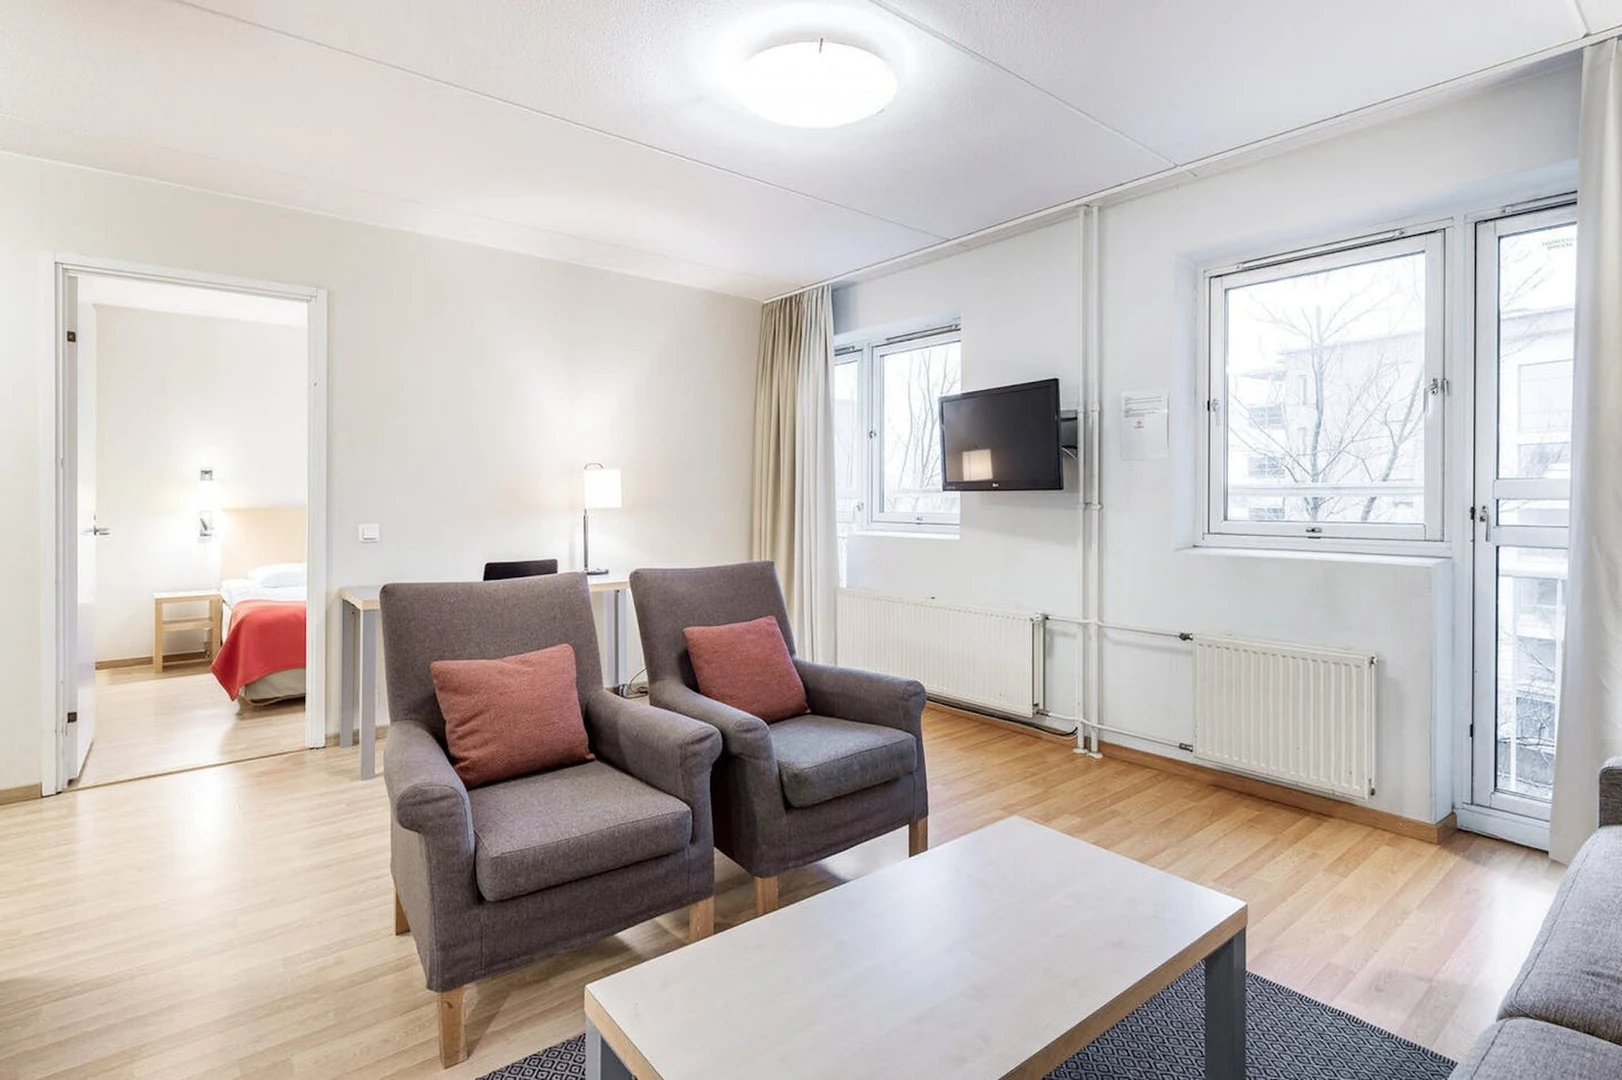 Apartamento moderno y luminoso en Espoo